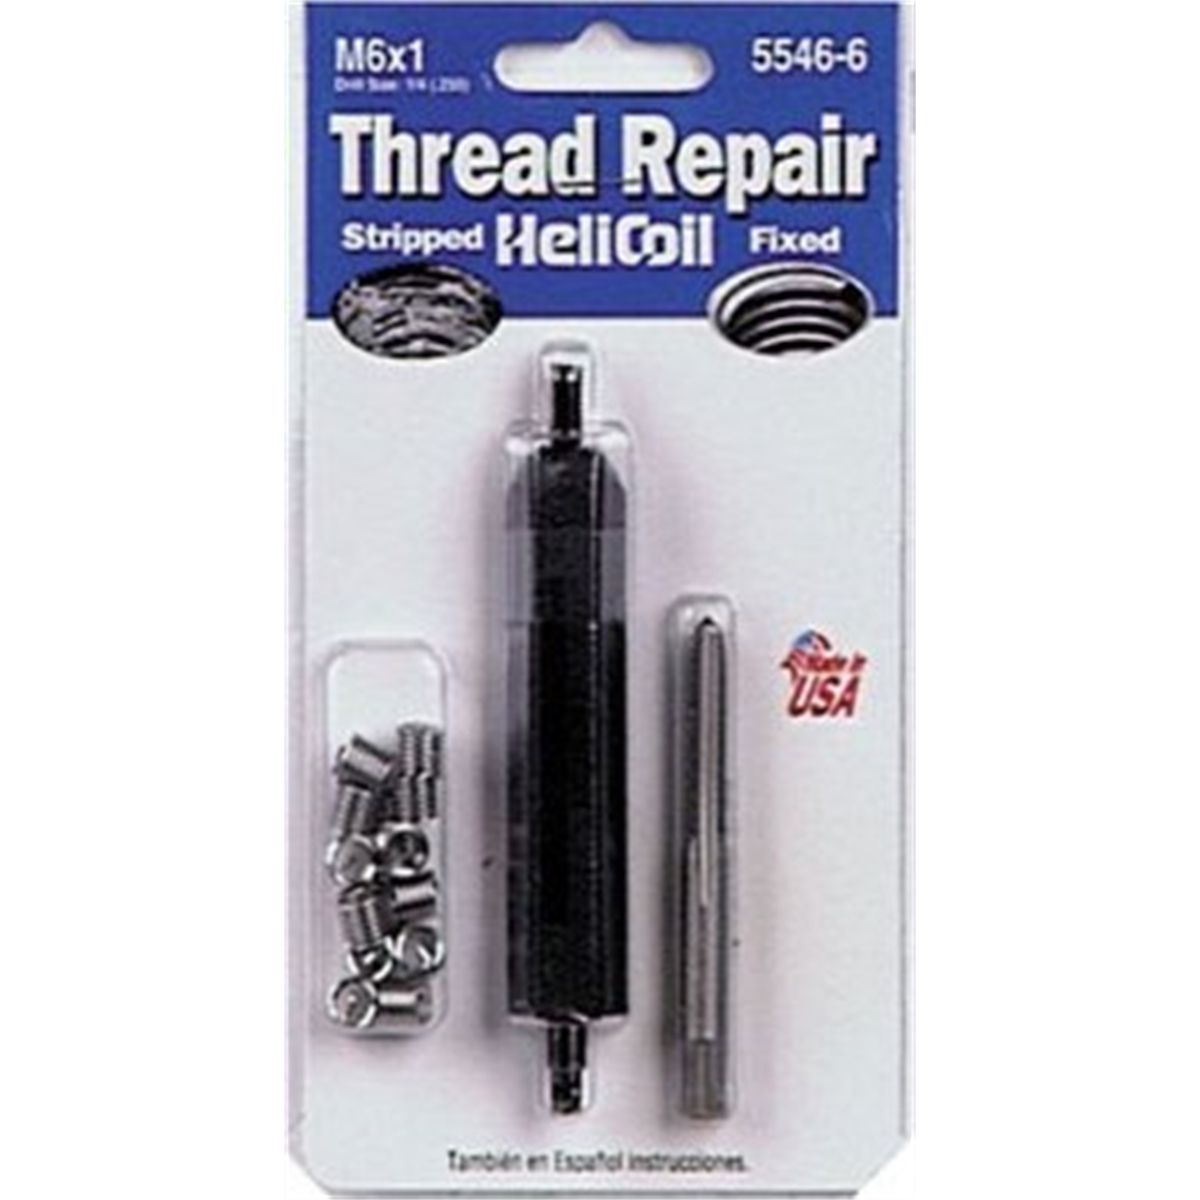 Metric Coarse Thread Repair Kit - M6x1 x 9.0mm, Heli Coil Products